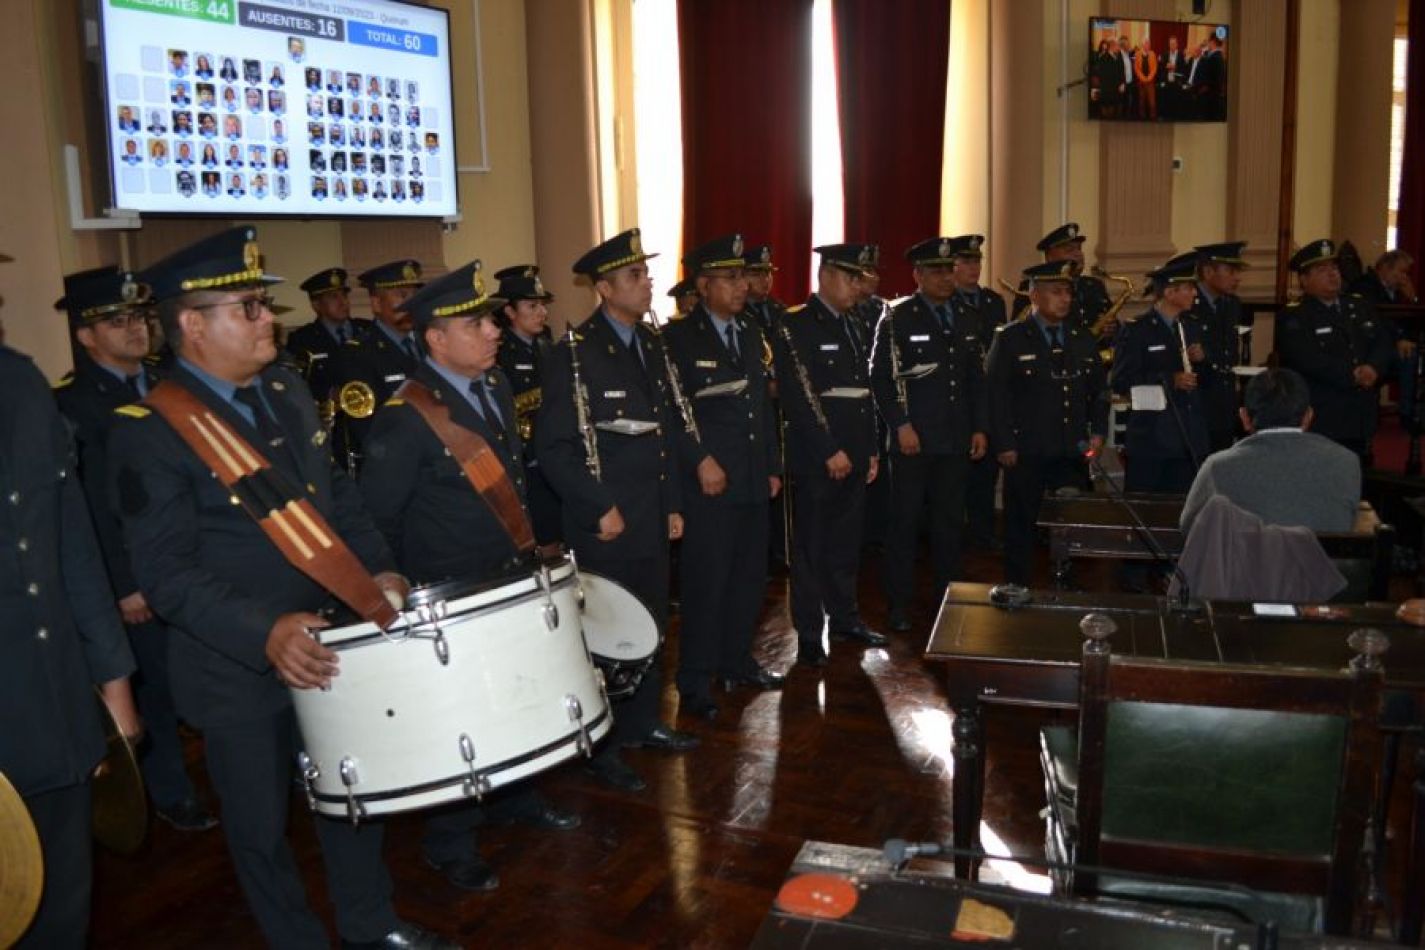 La Banda de Música de la Policía de Salta fue declarada de interés artístico y cultural